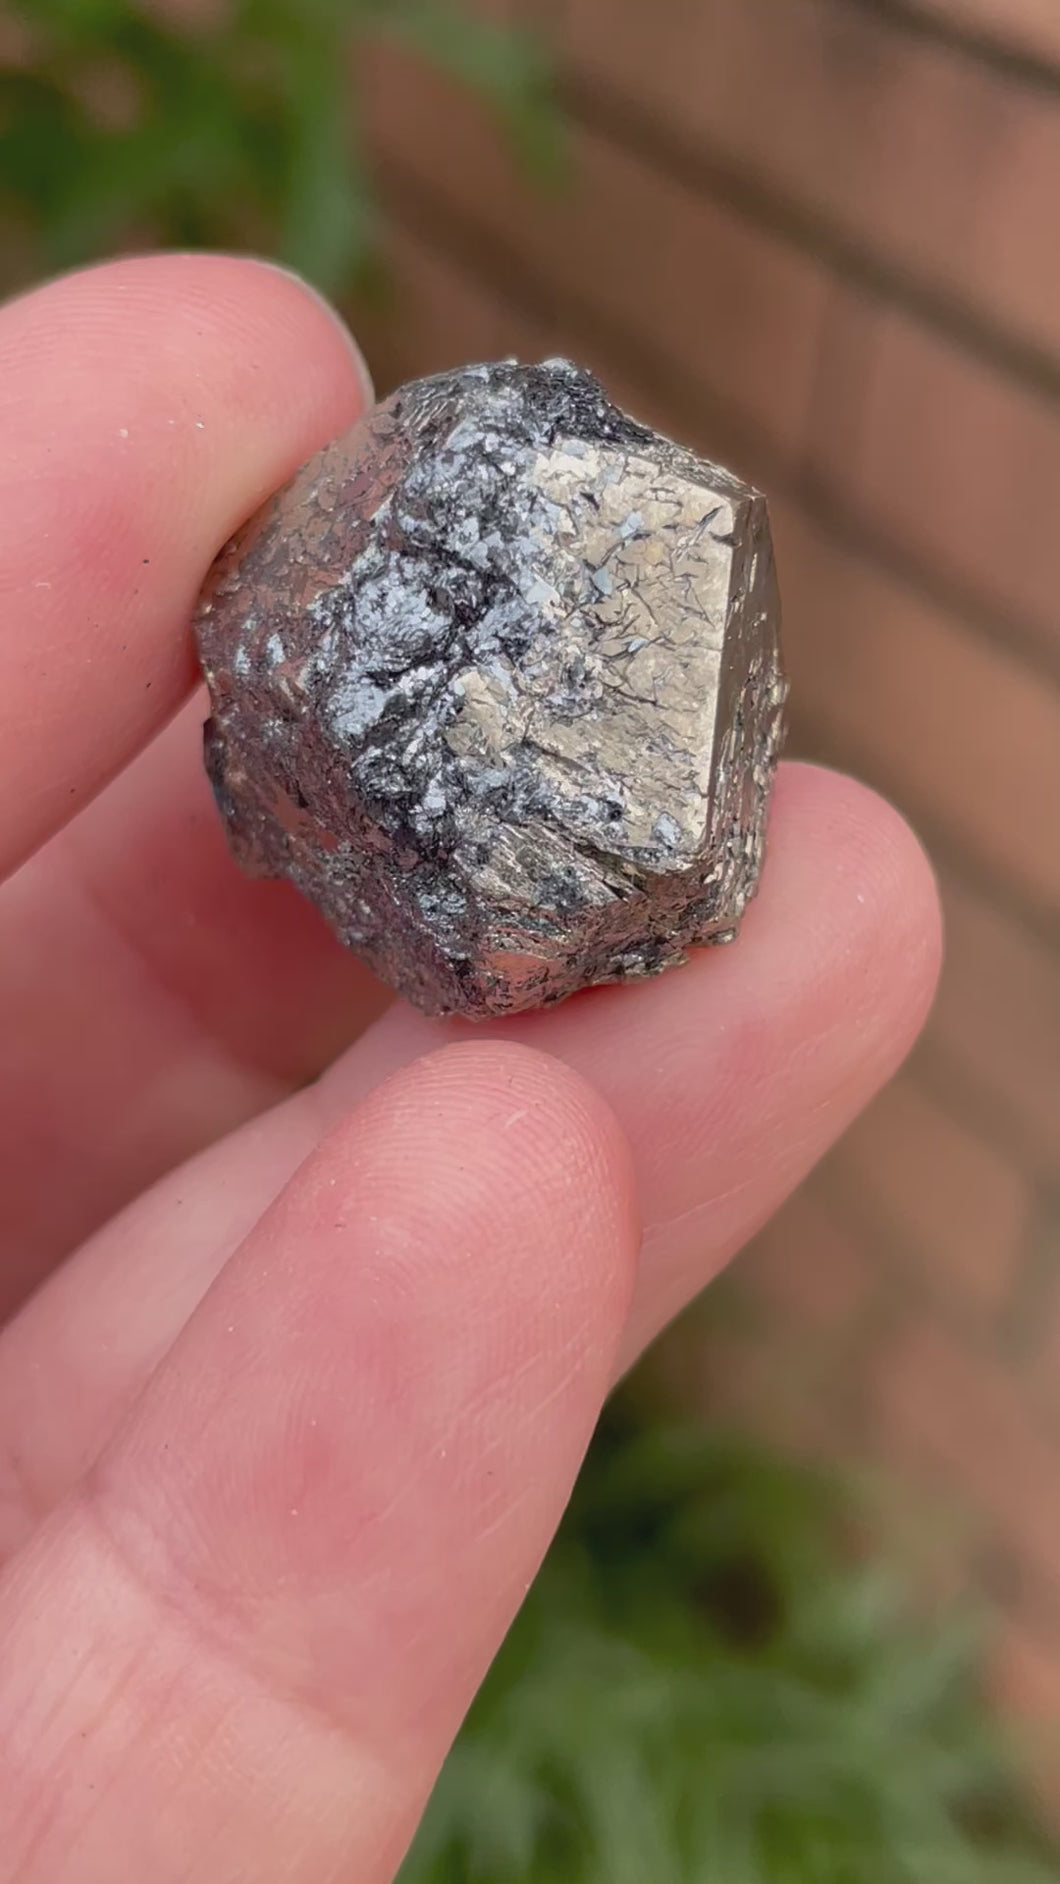 Pyrite with Hematite